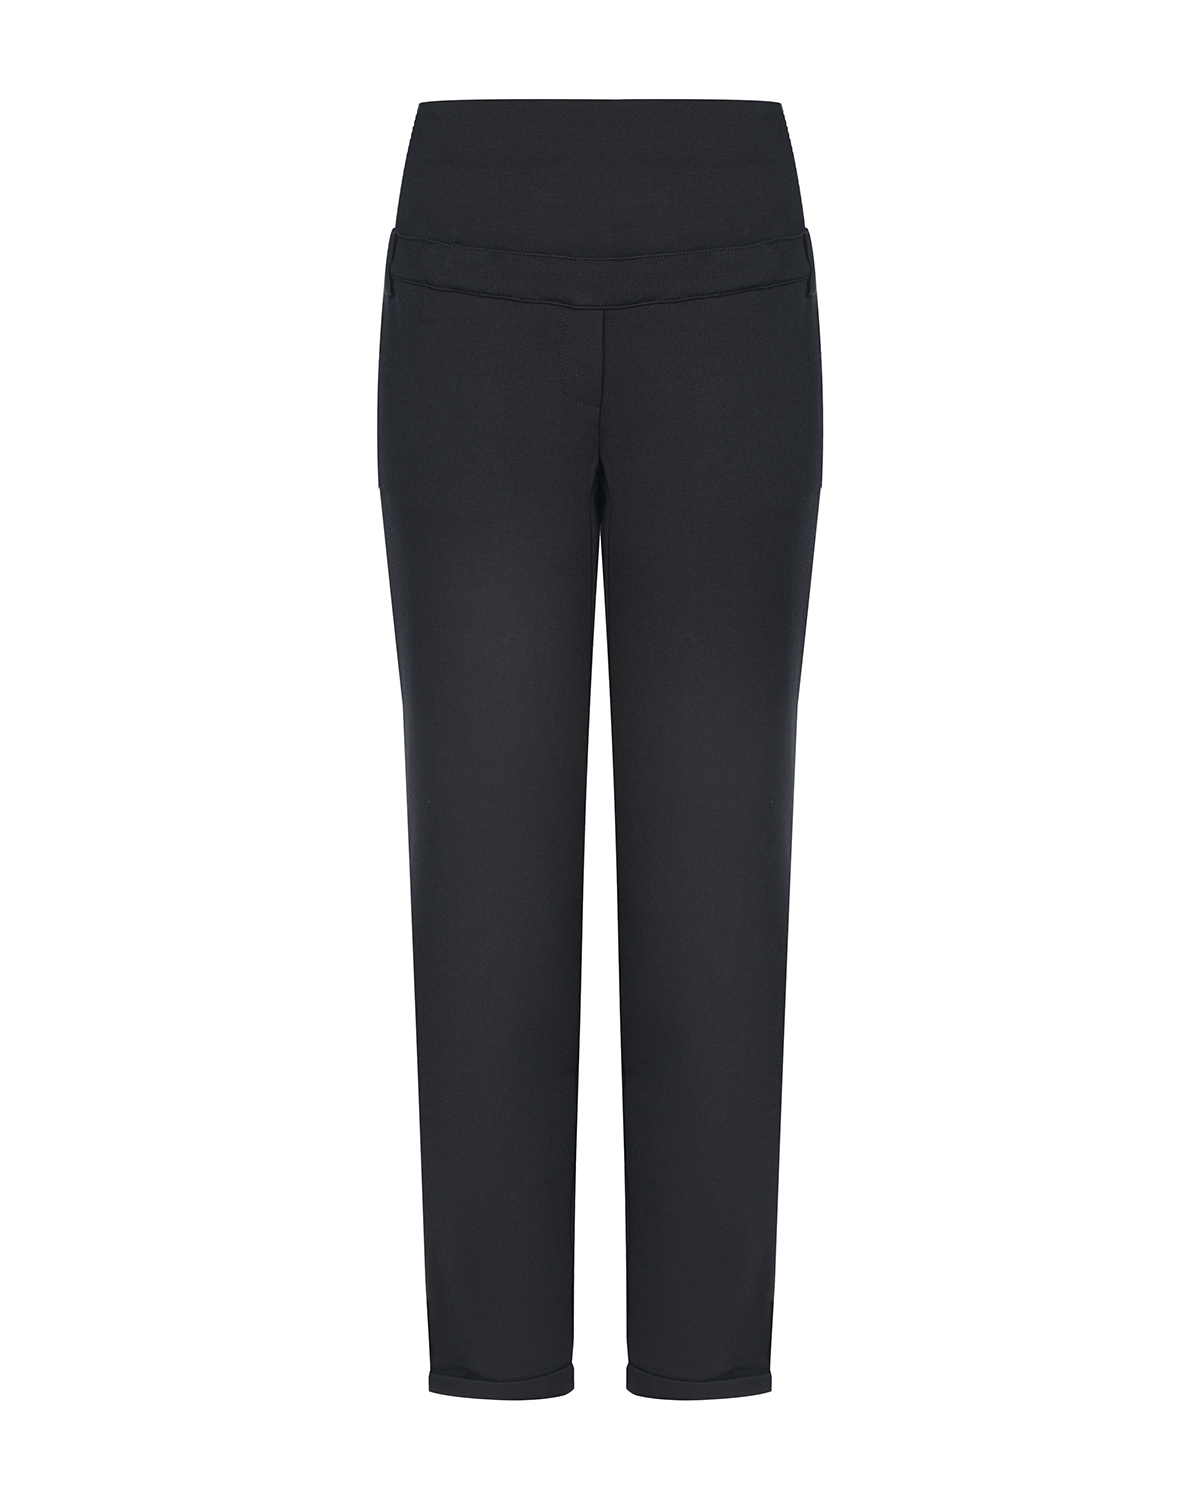 Черные трикотажные брюки для беременных Pietro Brunelli, размер 38, цвет черный